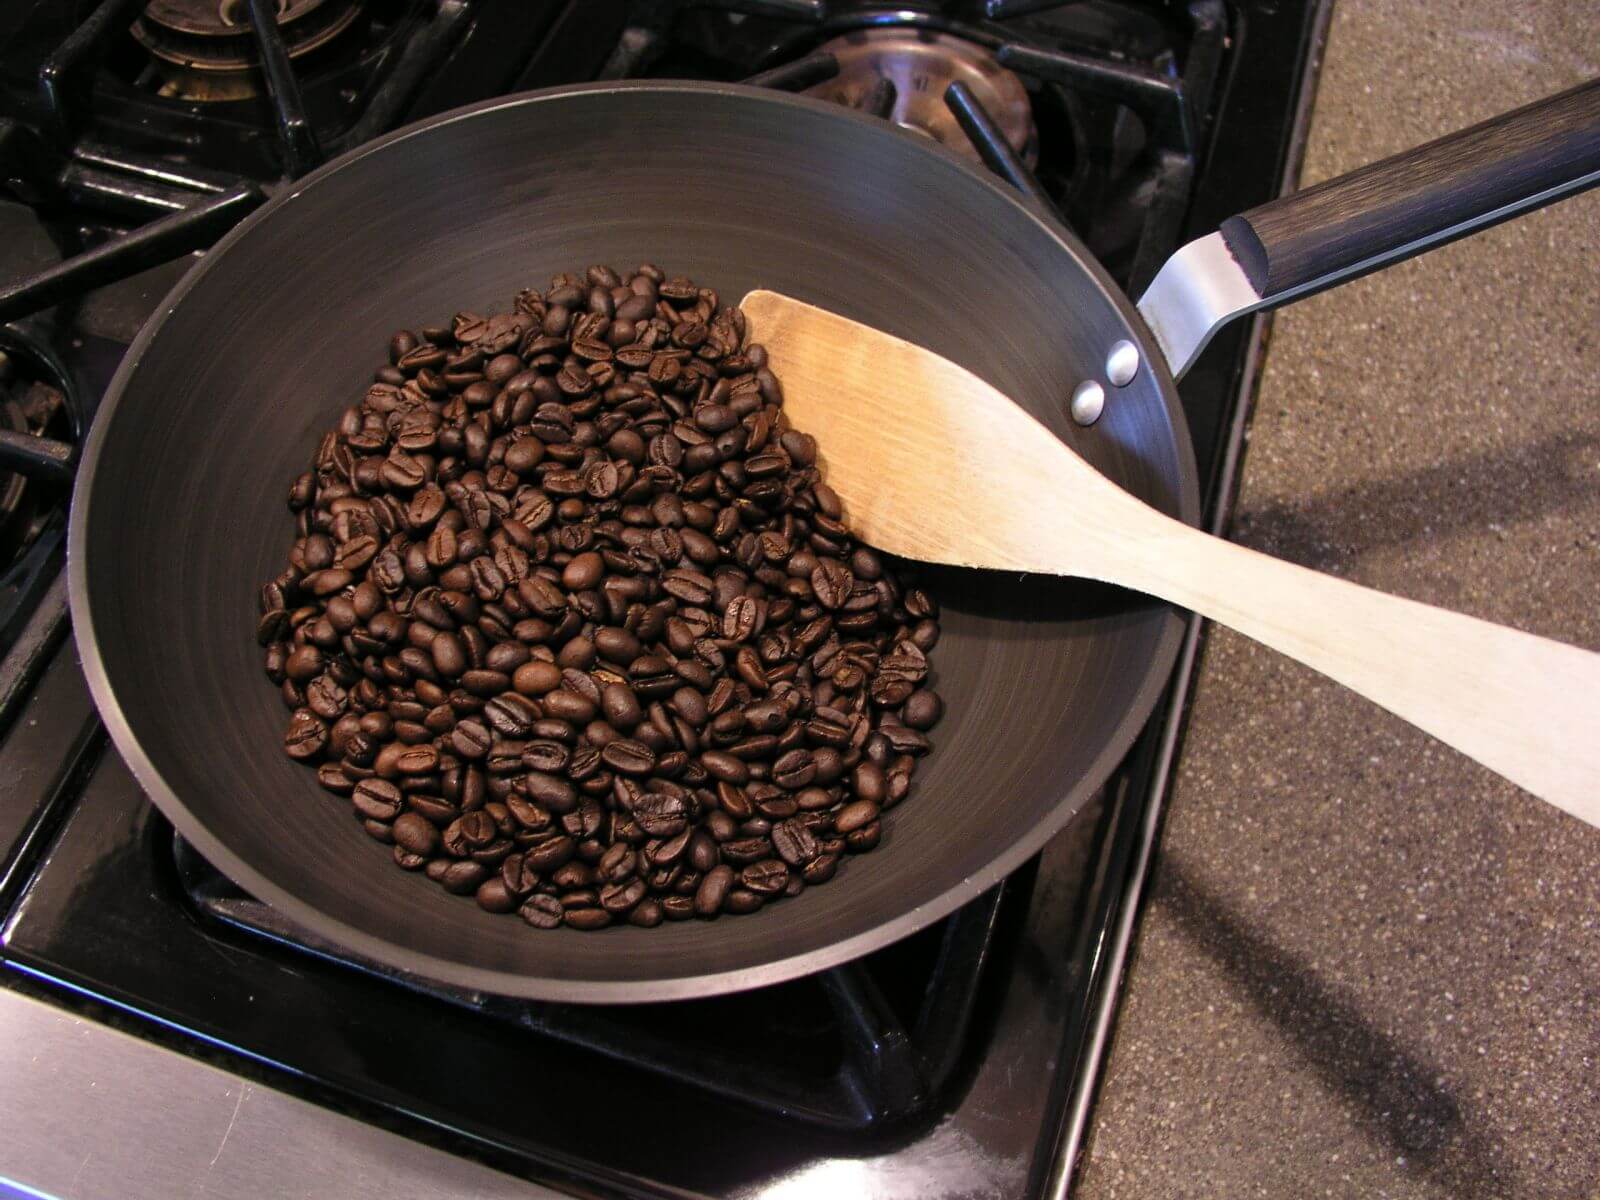 Как соль влияет на вкус кофе. В результате жарки кофе в нем образуются соединения, которые обладают горьким вкусом. Фото.